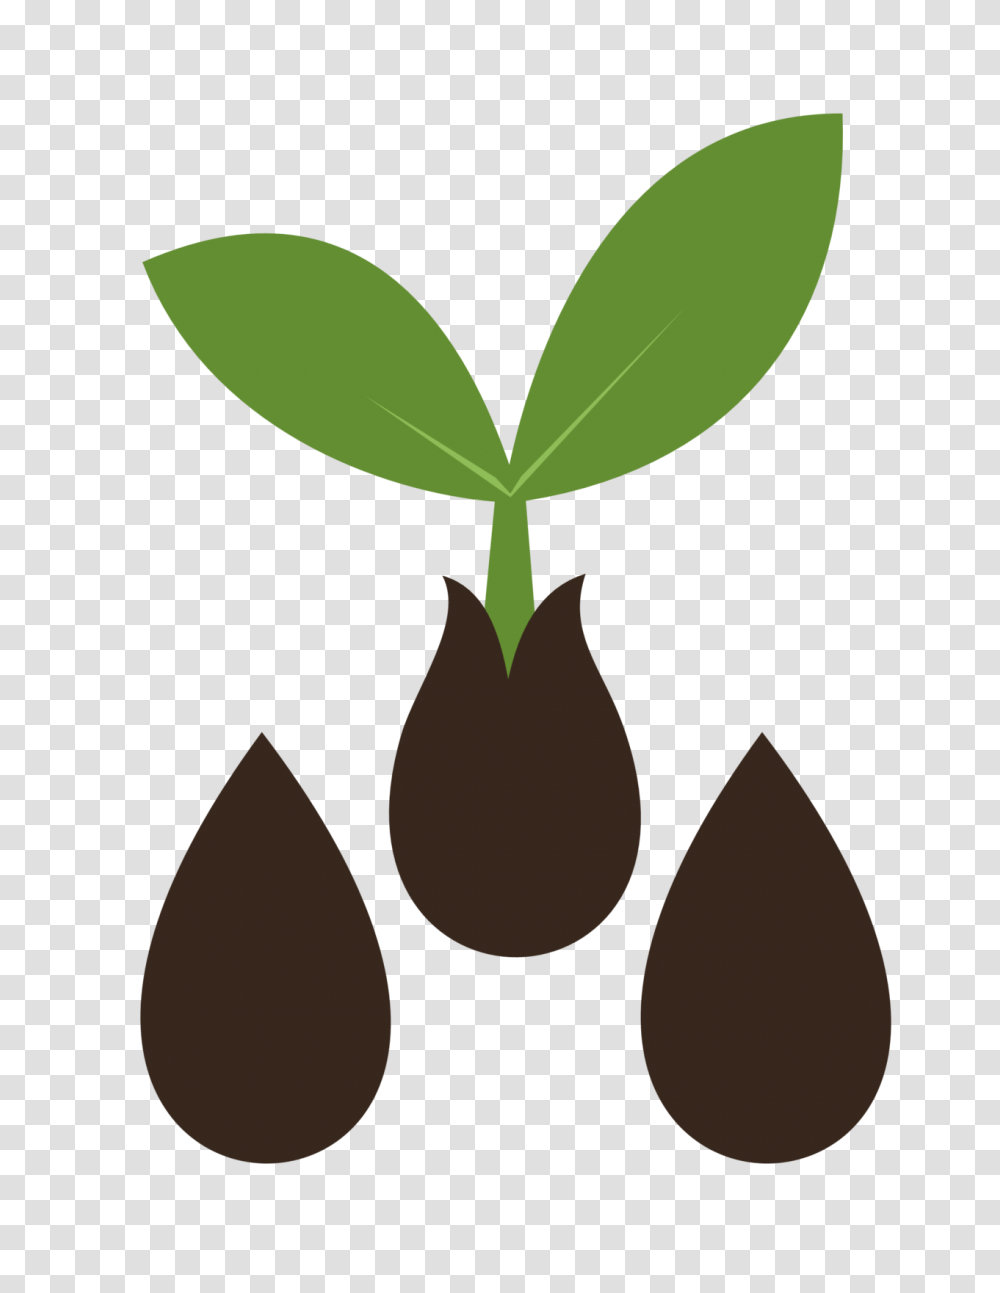 Image Result For Seed Vector Seed Seeds Branding, Plant, Leaf, Vegetable, Food Transparent Png